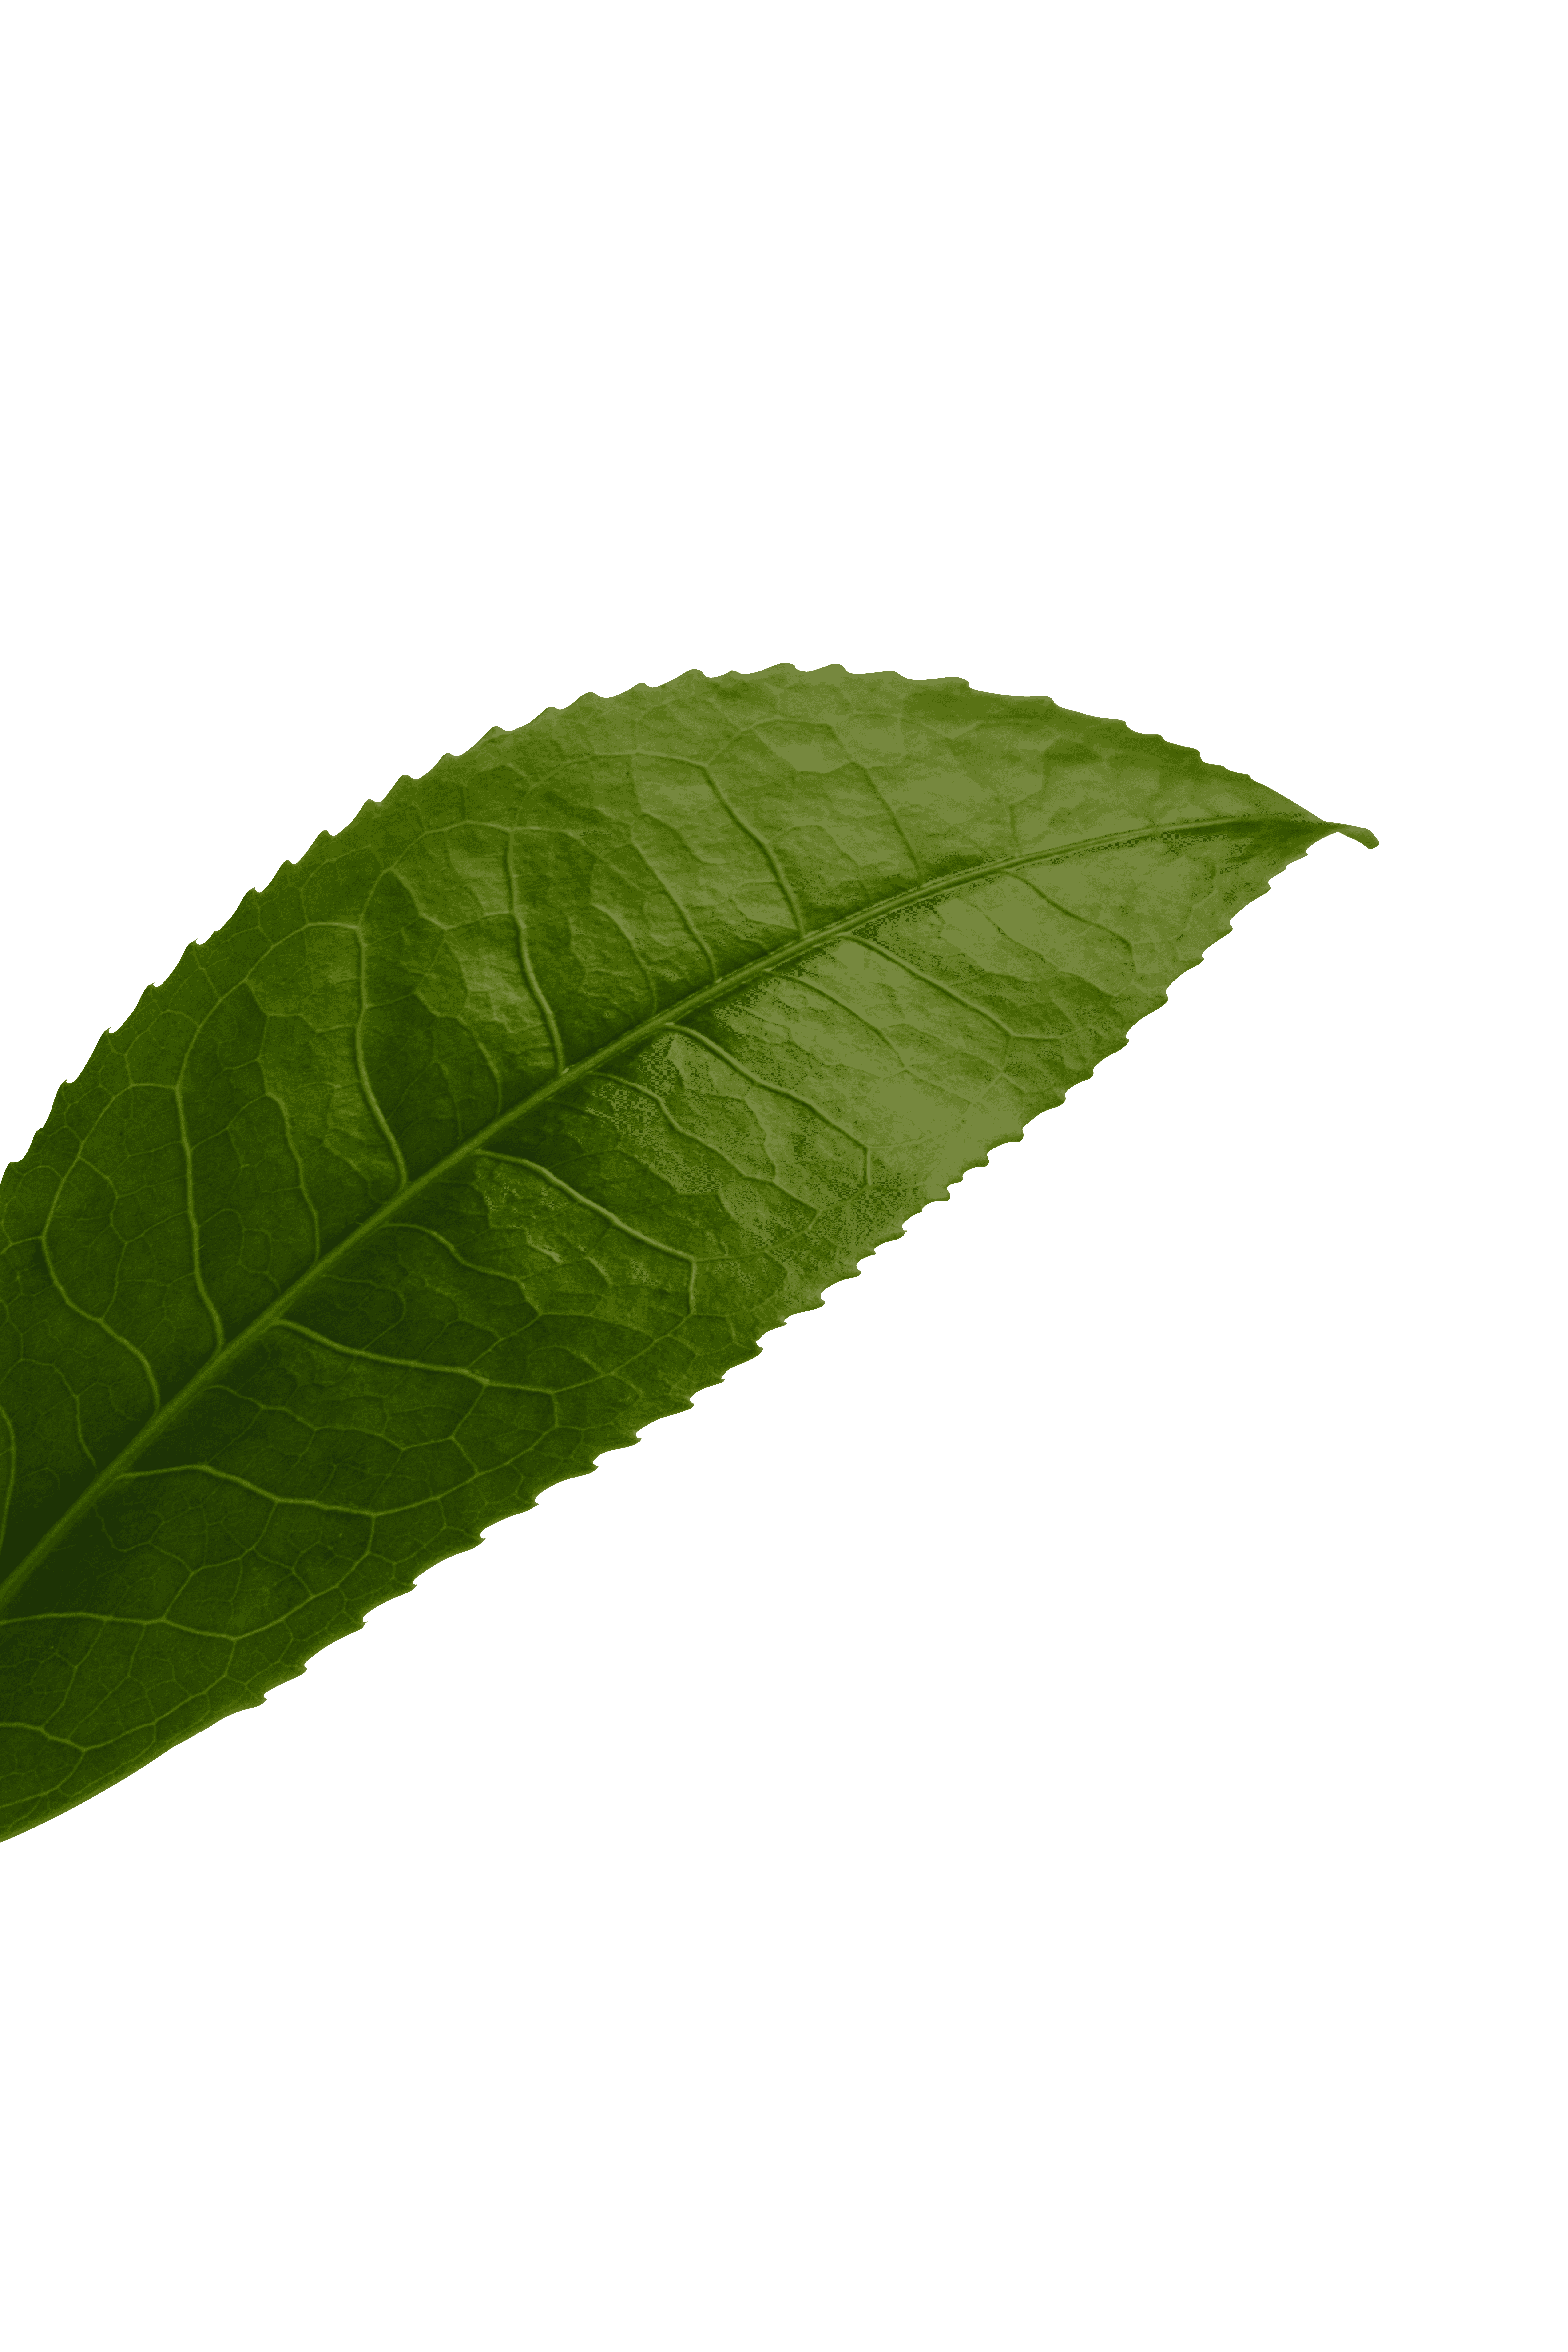 leaf transparent background.png